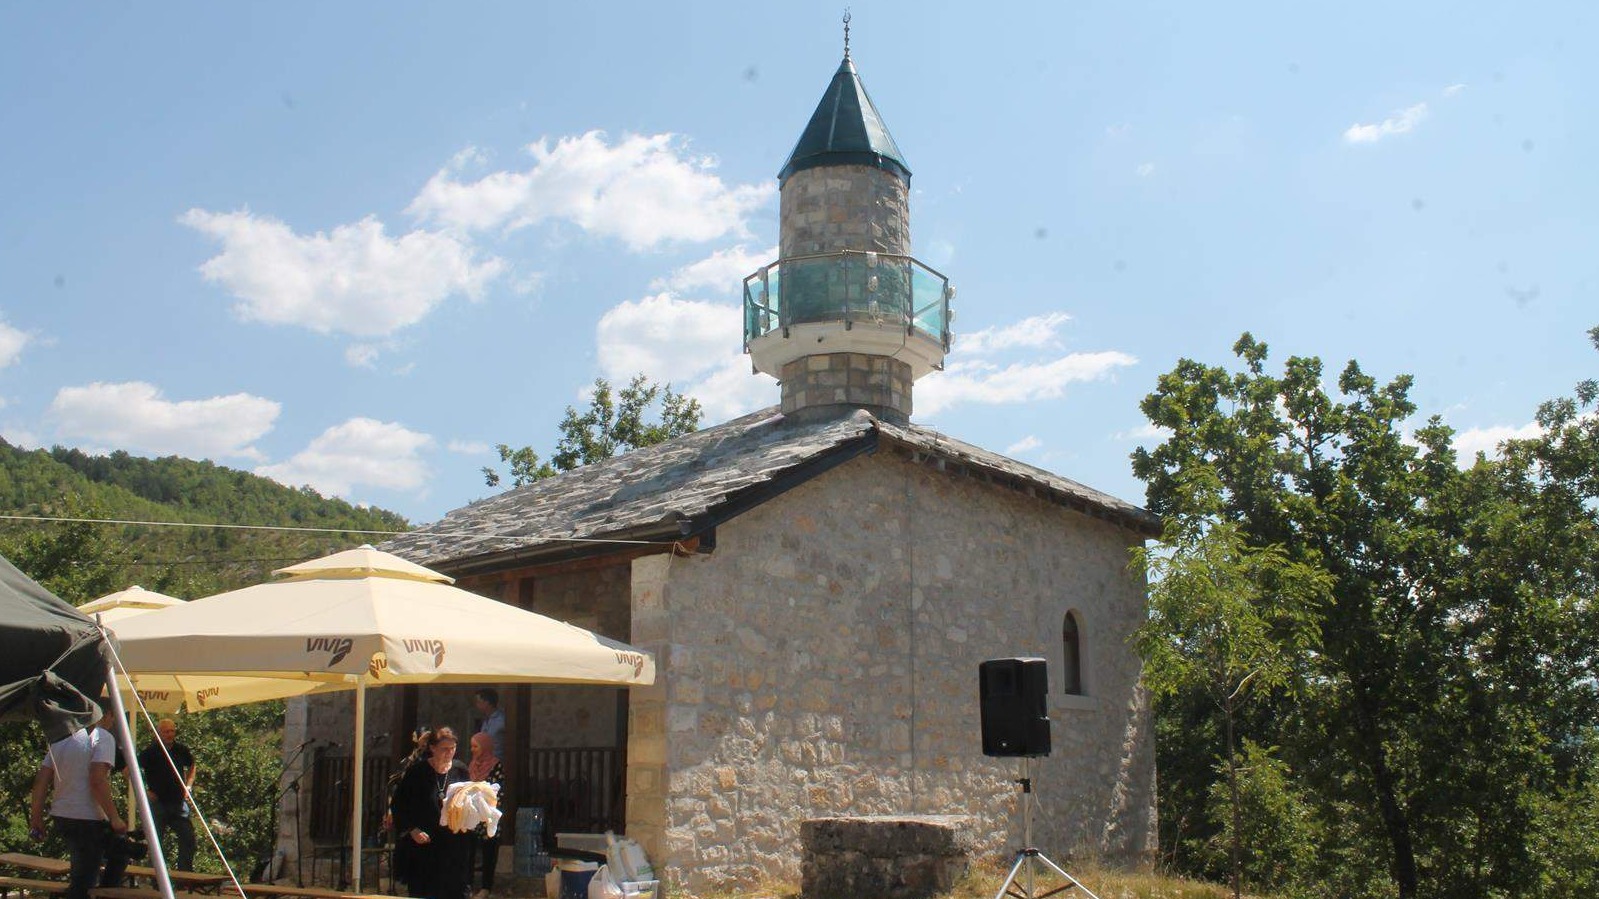 Mevludskim programom obilježena izgradnja munare na džamiji "Adamir Jerković" u Lastvi kod Trebinja